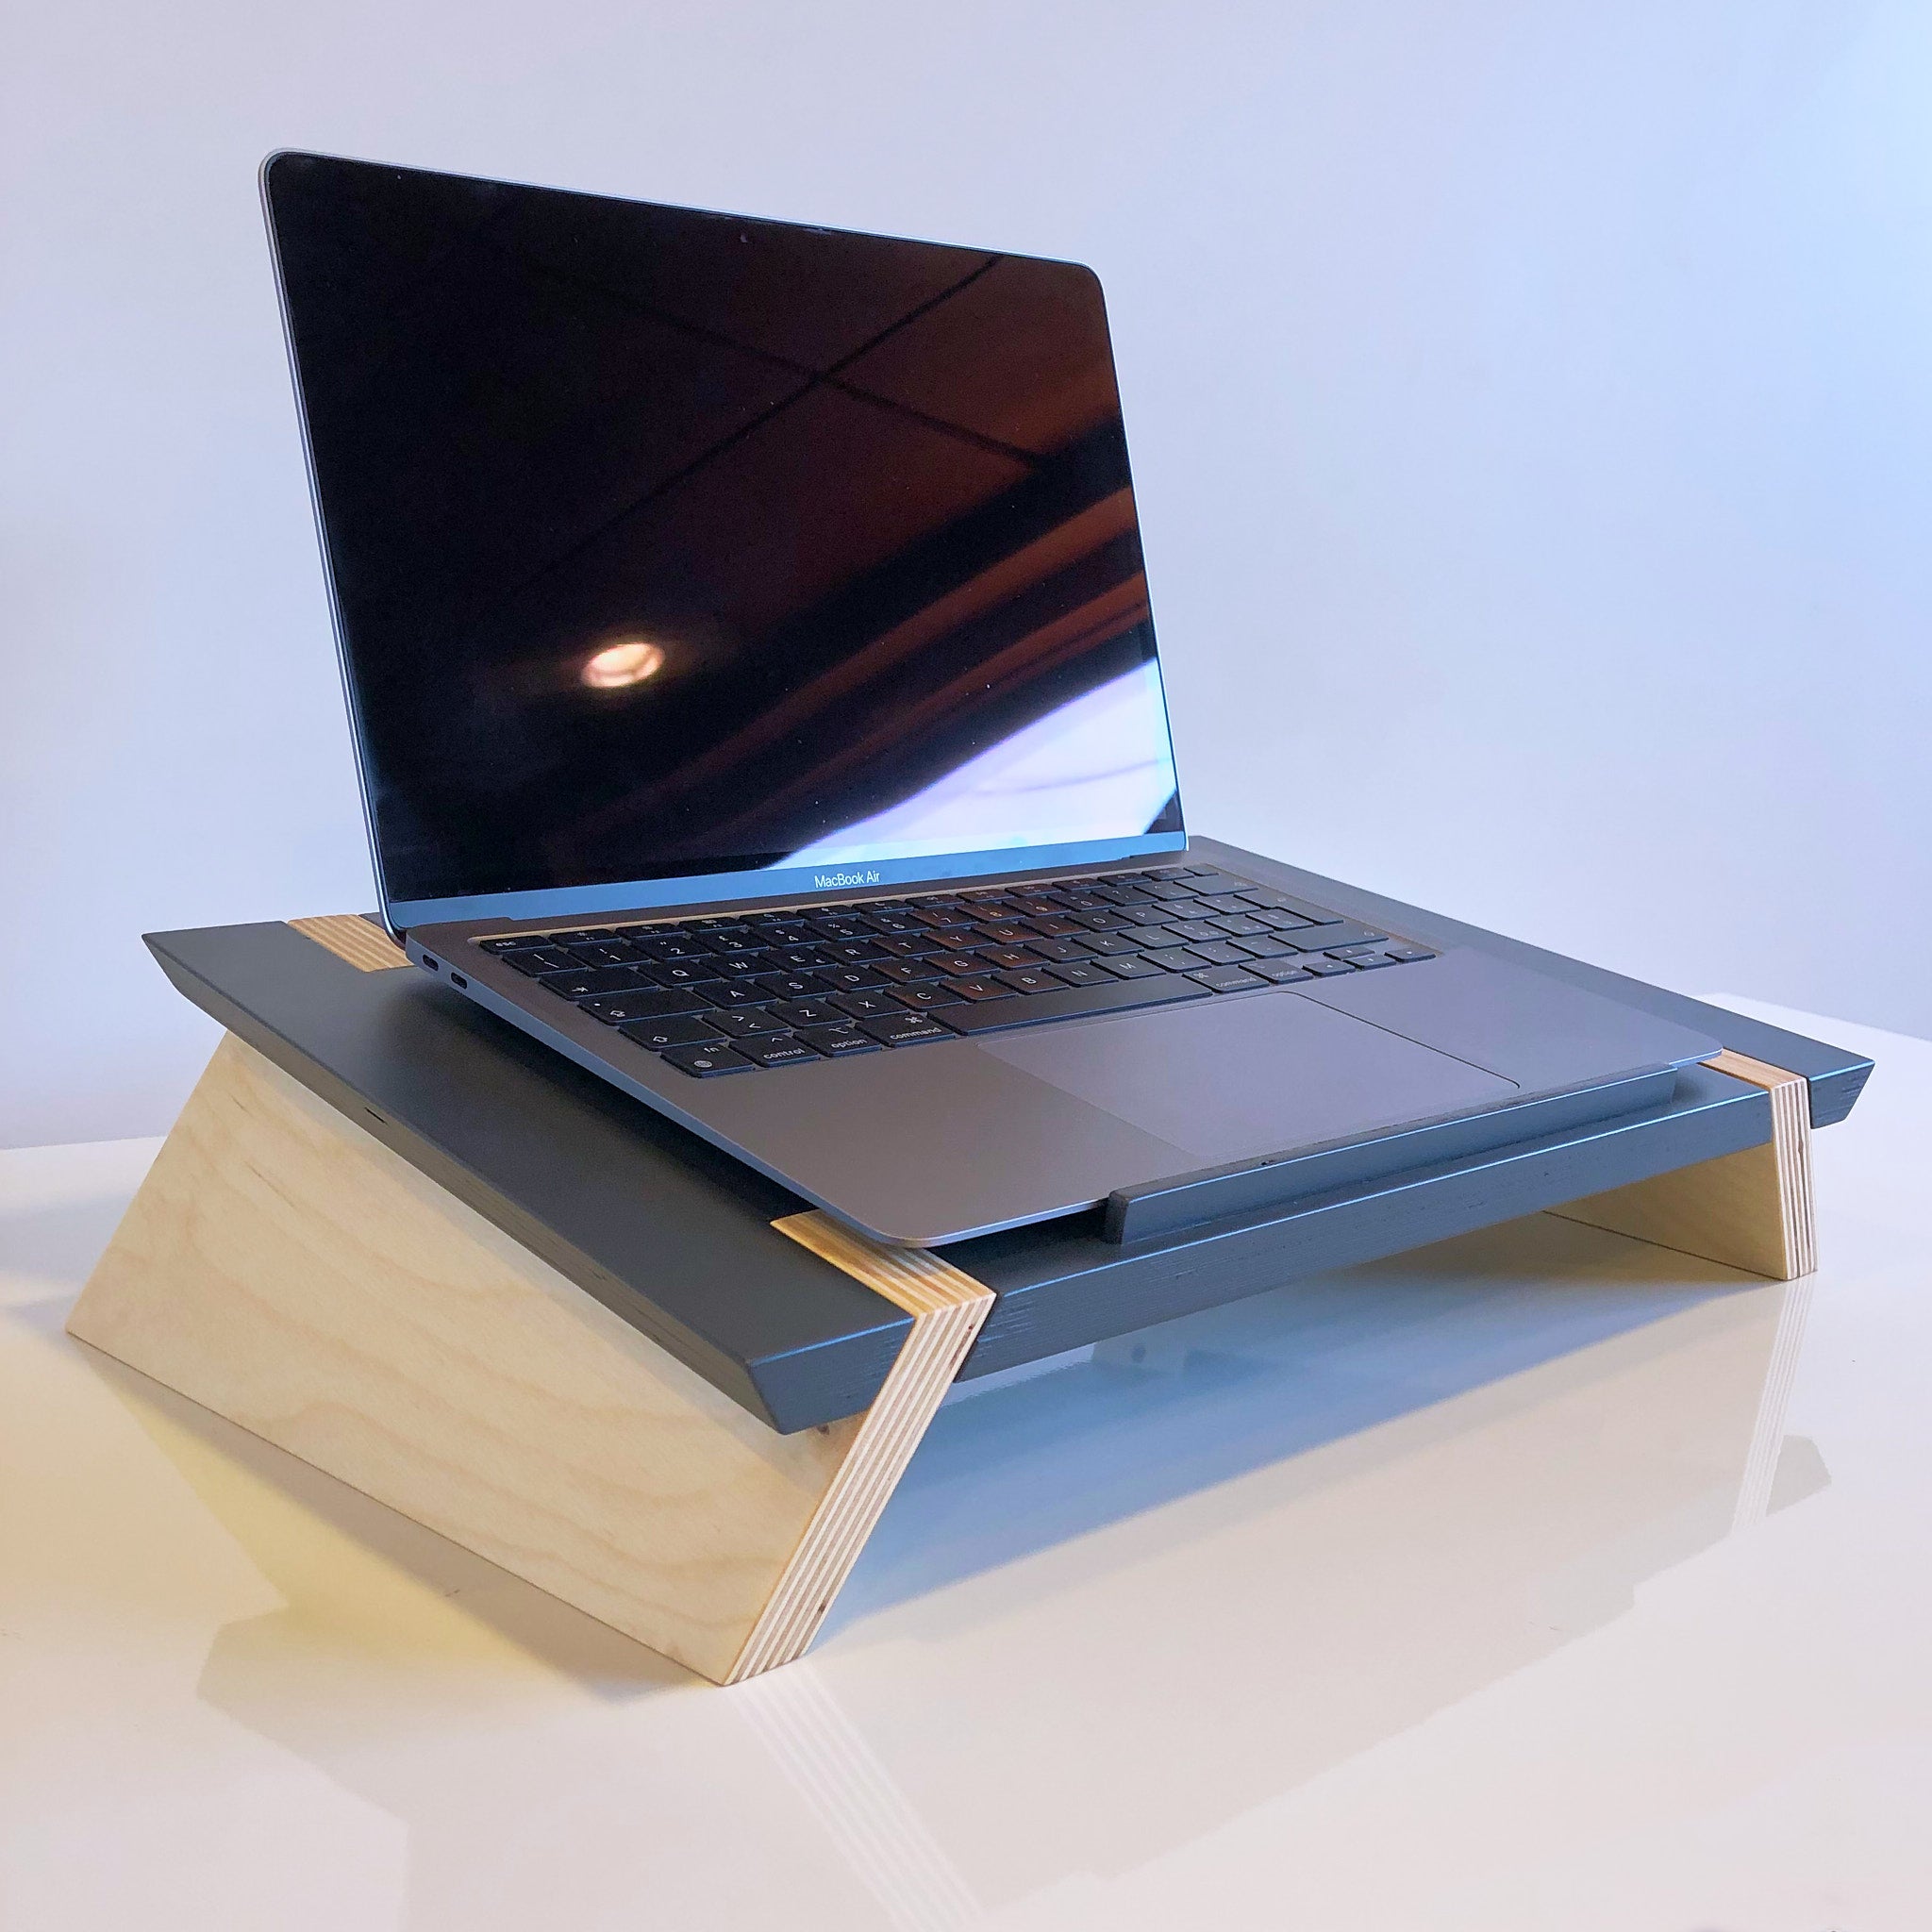 Supporto per pc portatile, laptop standing desk, ergonomico in legno  bicolore elegante - demera